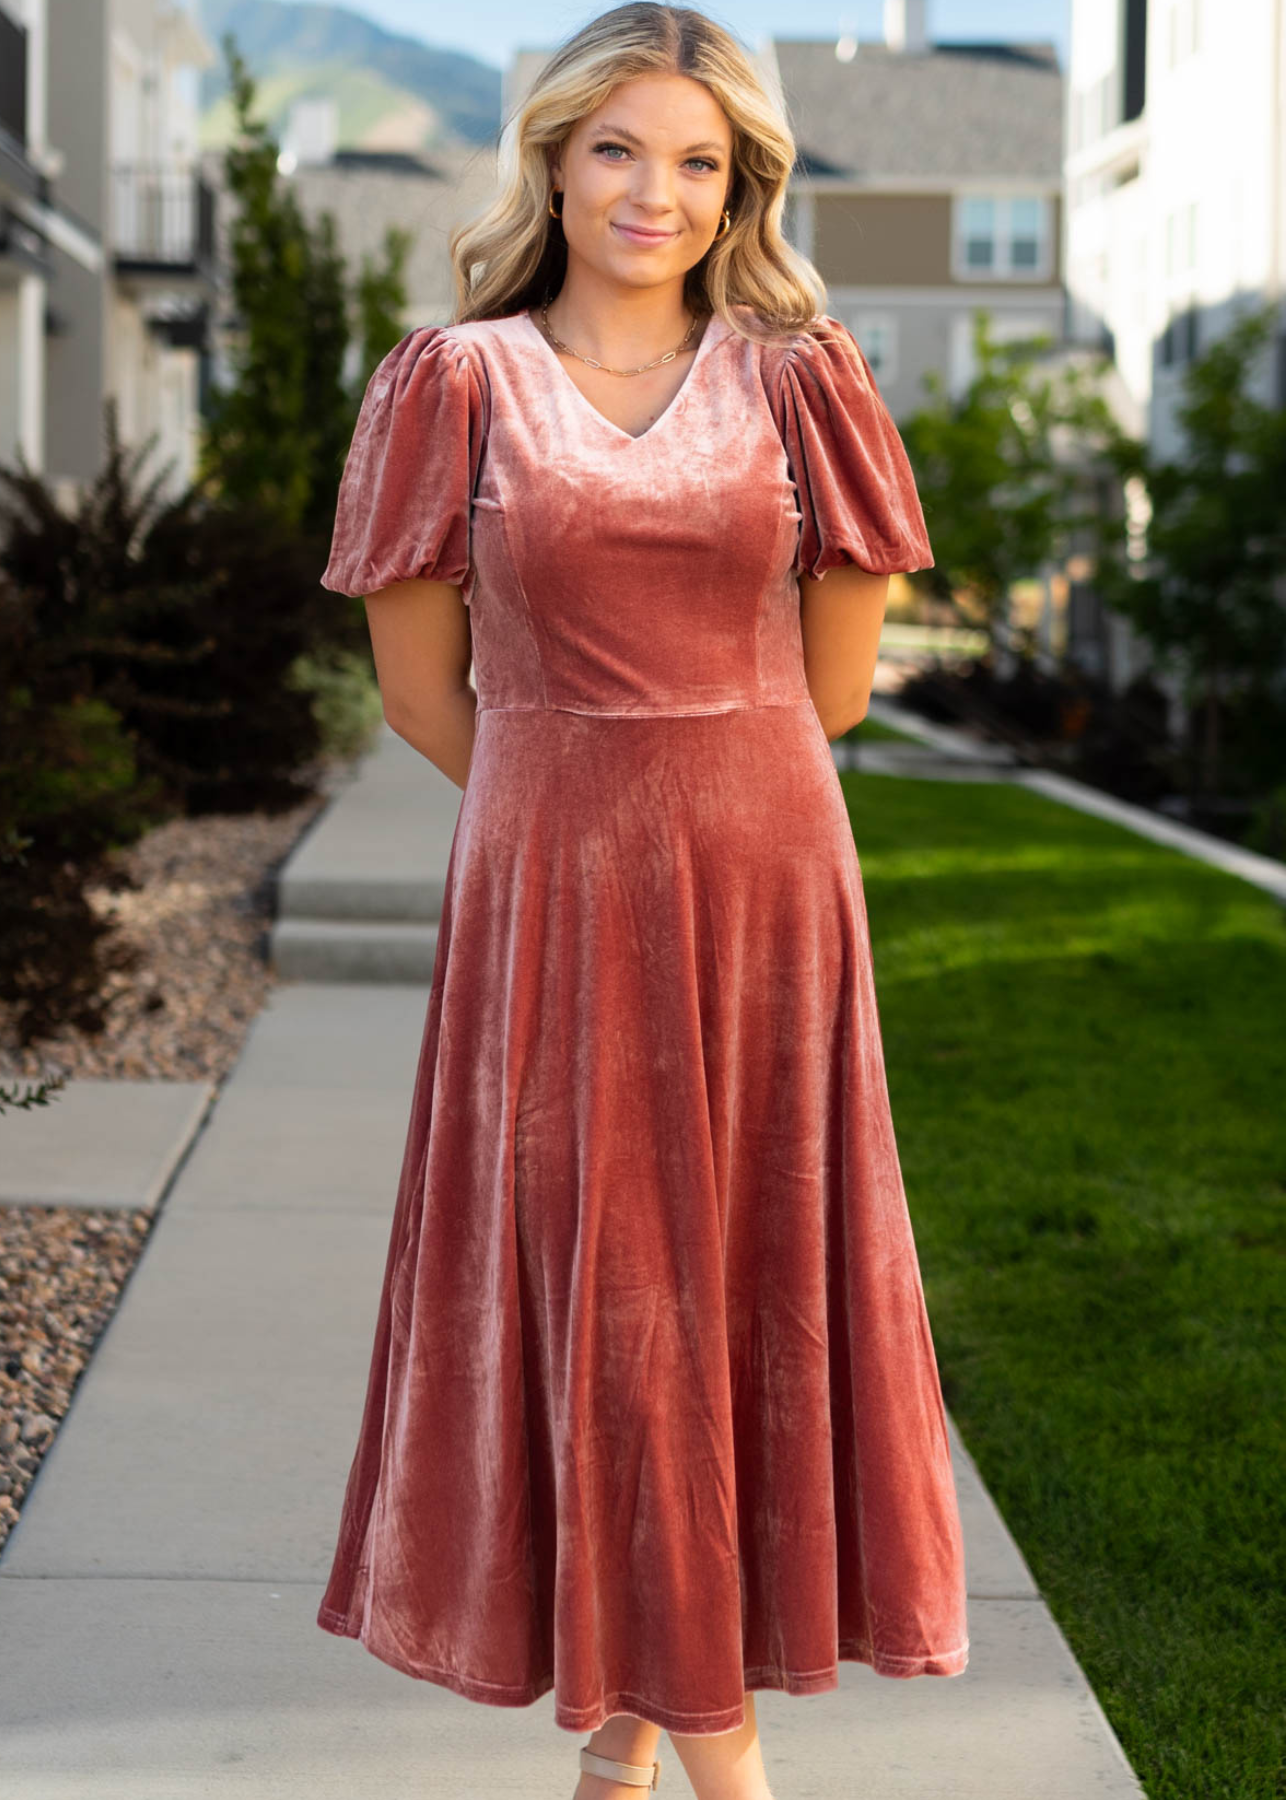 Short sleeve velvet blush dress with a v-neck